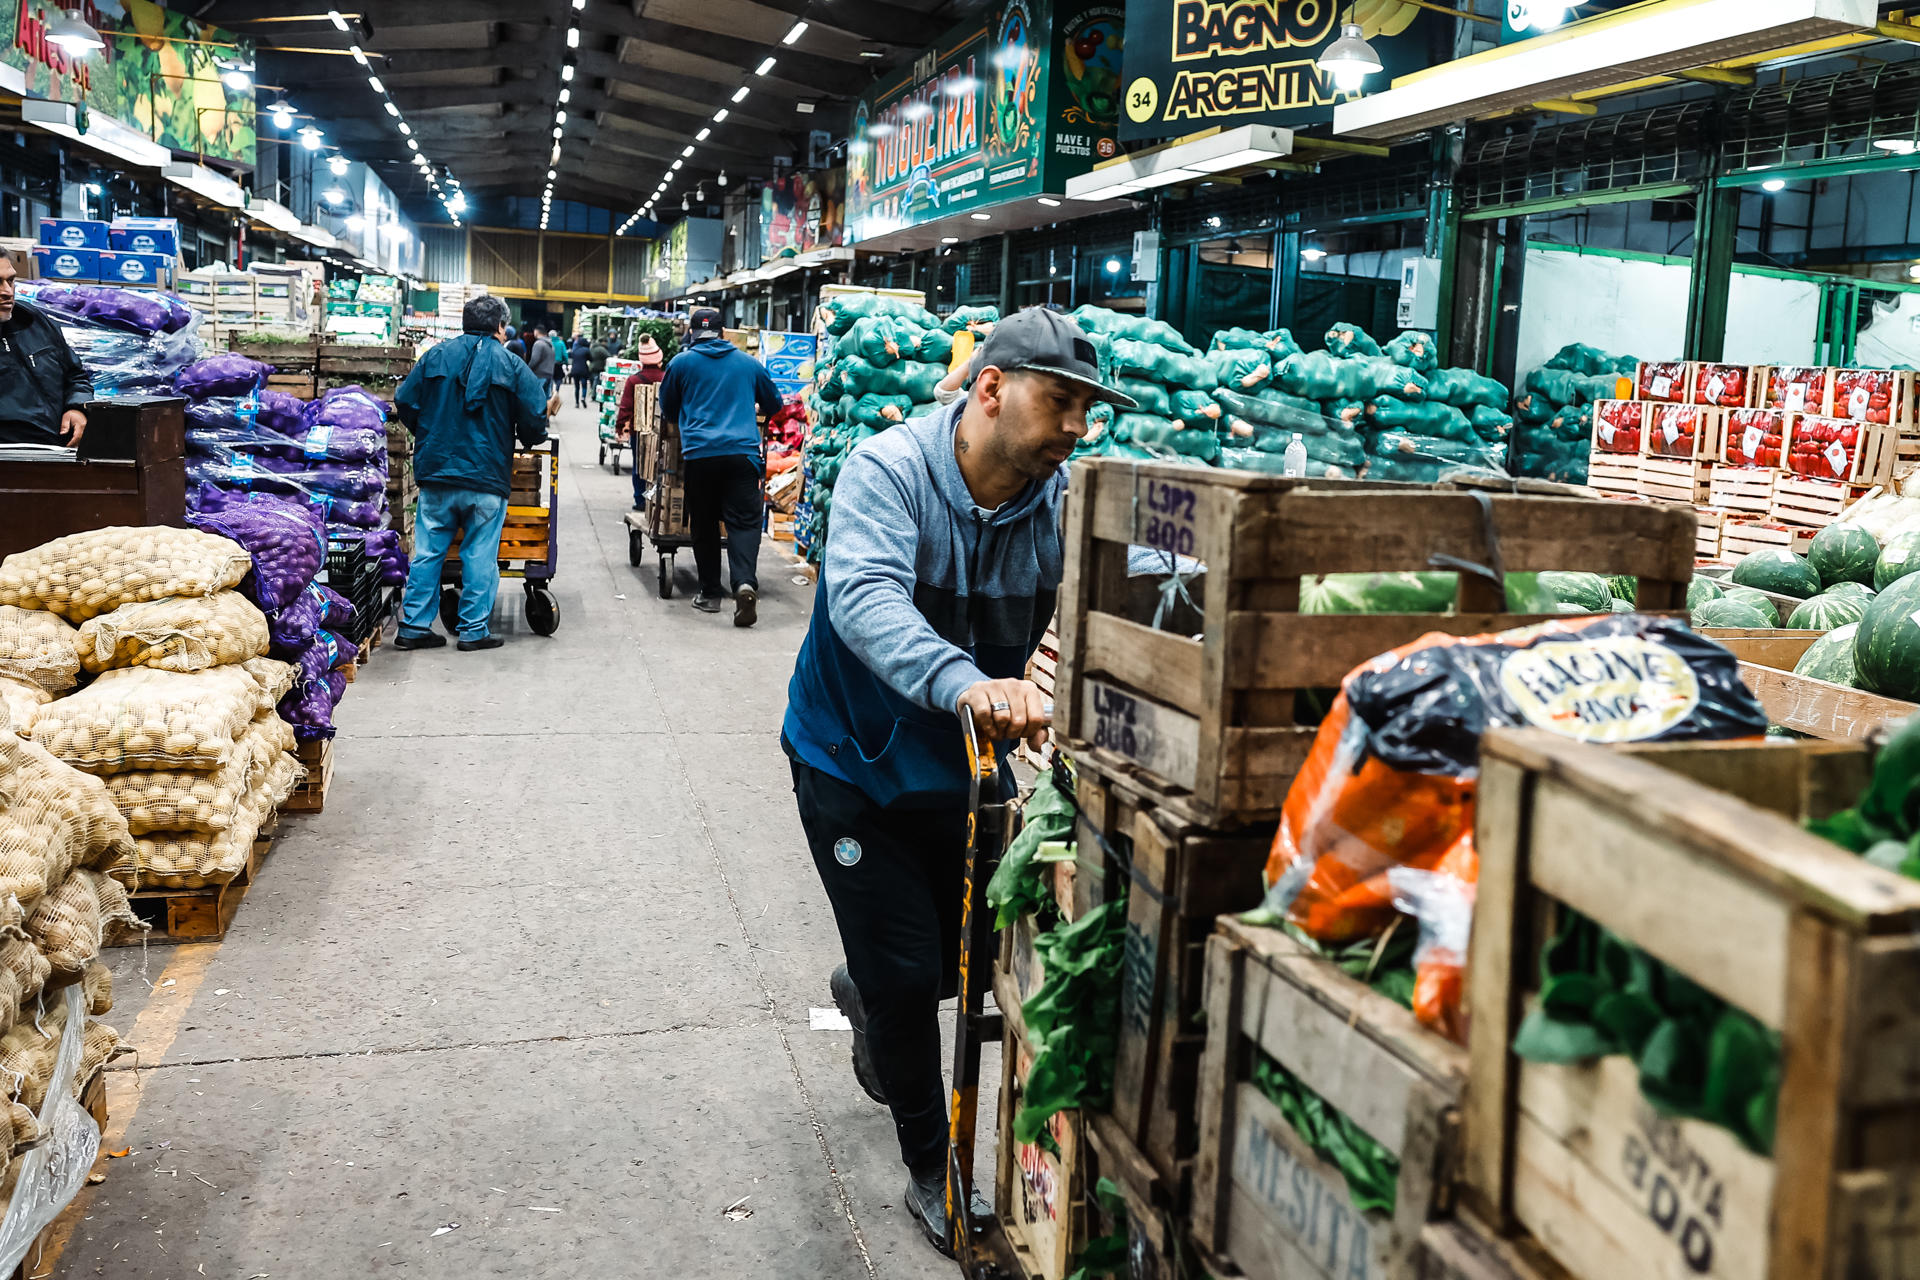 Personas realizan descarga de frutas y verduras, en el mercado central de frutas y verduras, en Buenos Aires (Argentina), en una fotografía de archivo. EFE/Juan Ignacio Roncoroni